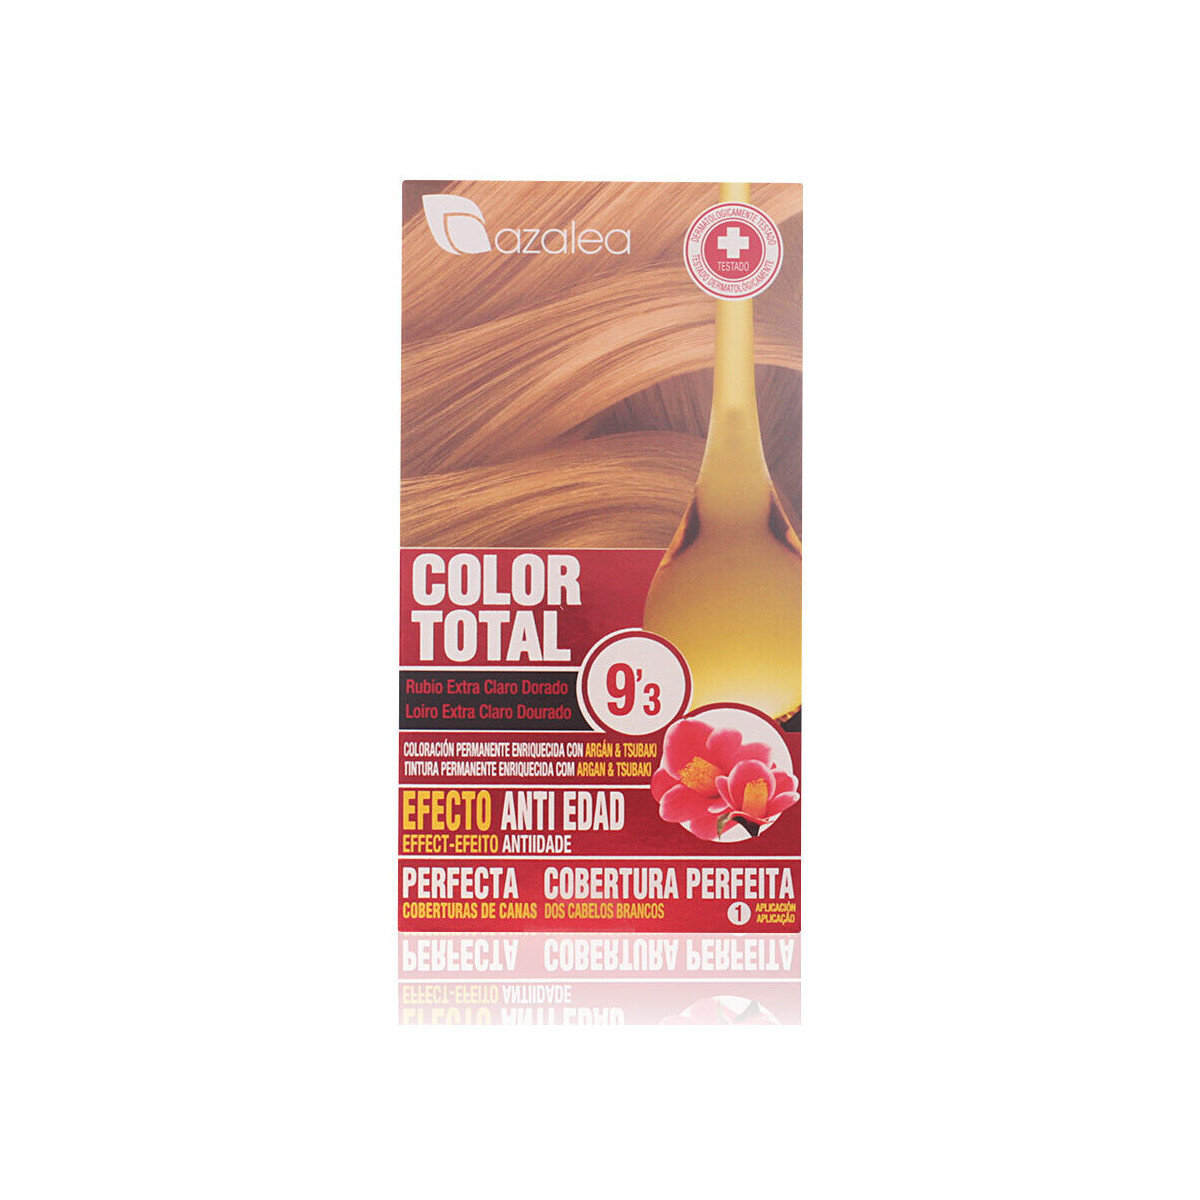 Beauty Damen Haarfärbung Azalea Color Total 9,3-rubio Extra Claro Dorado 